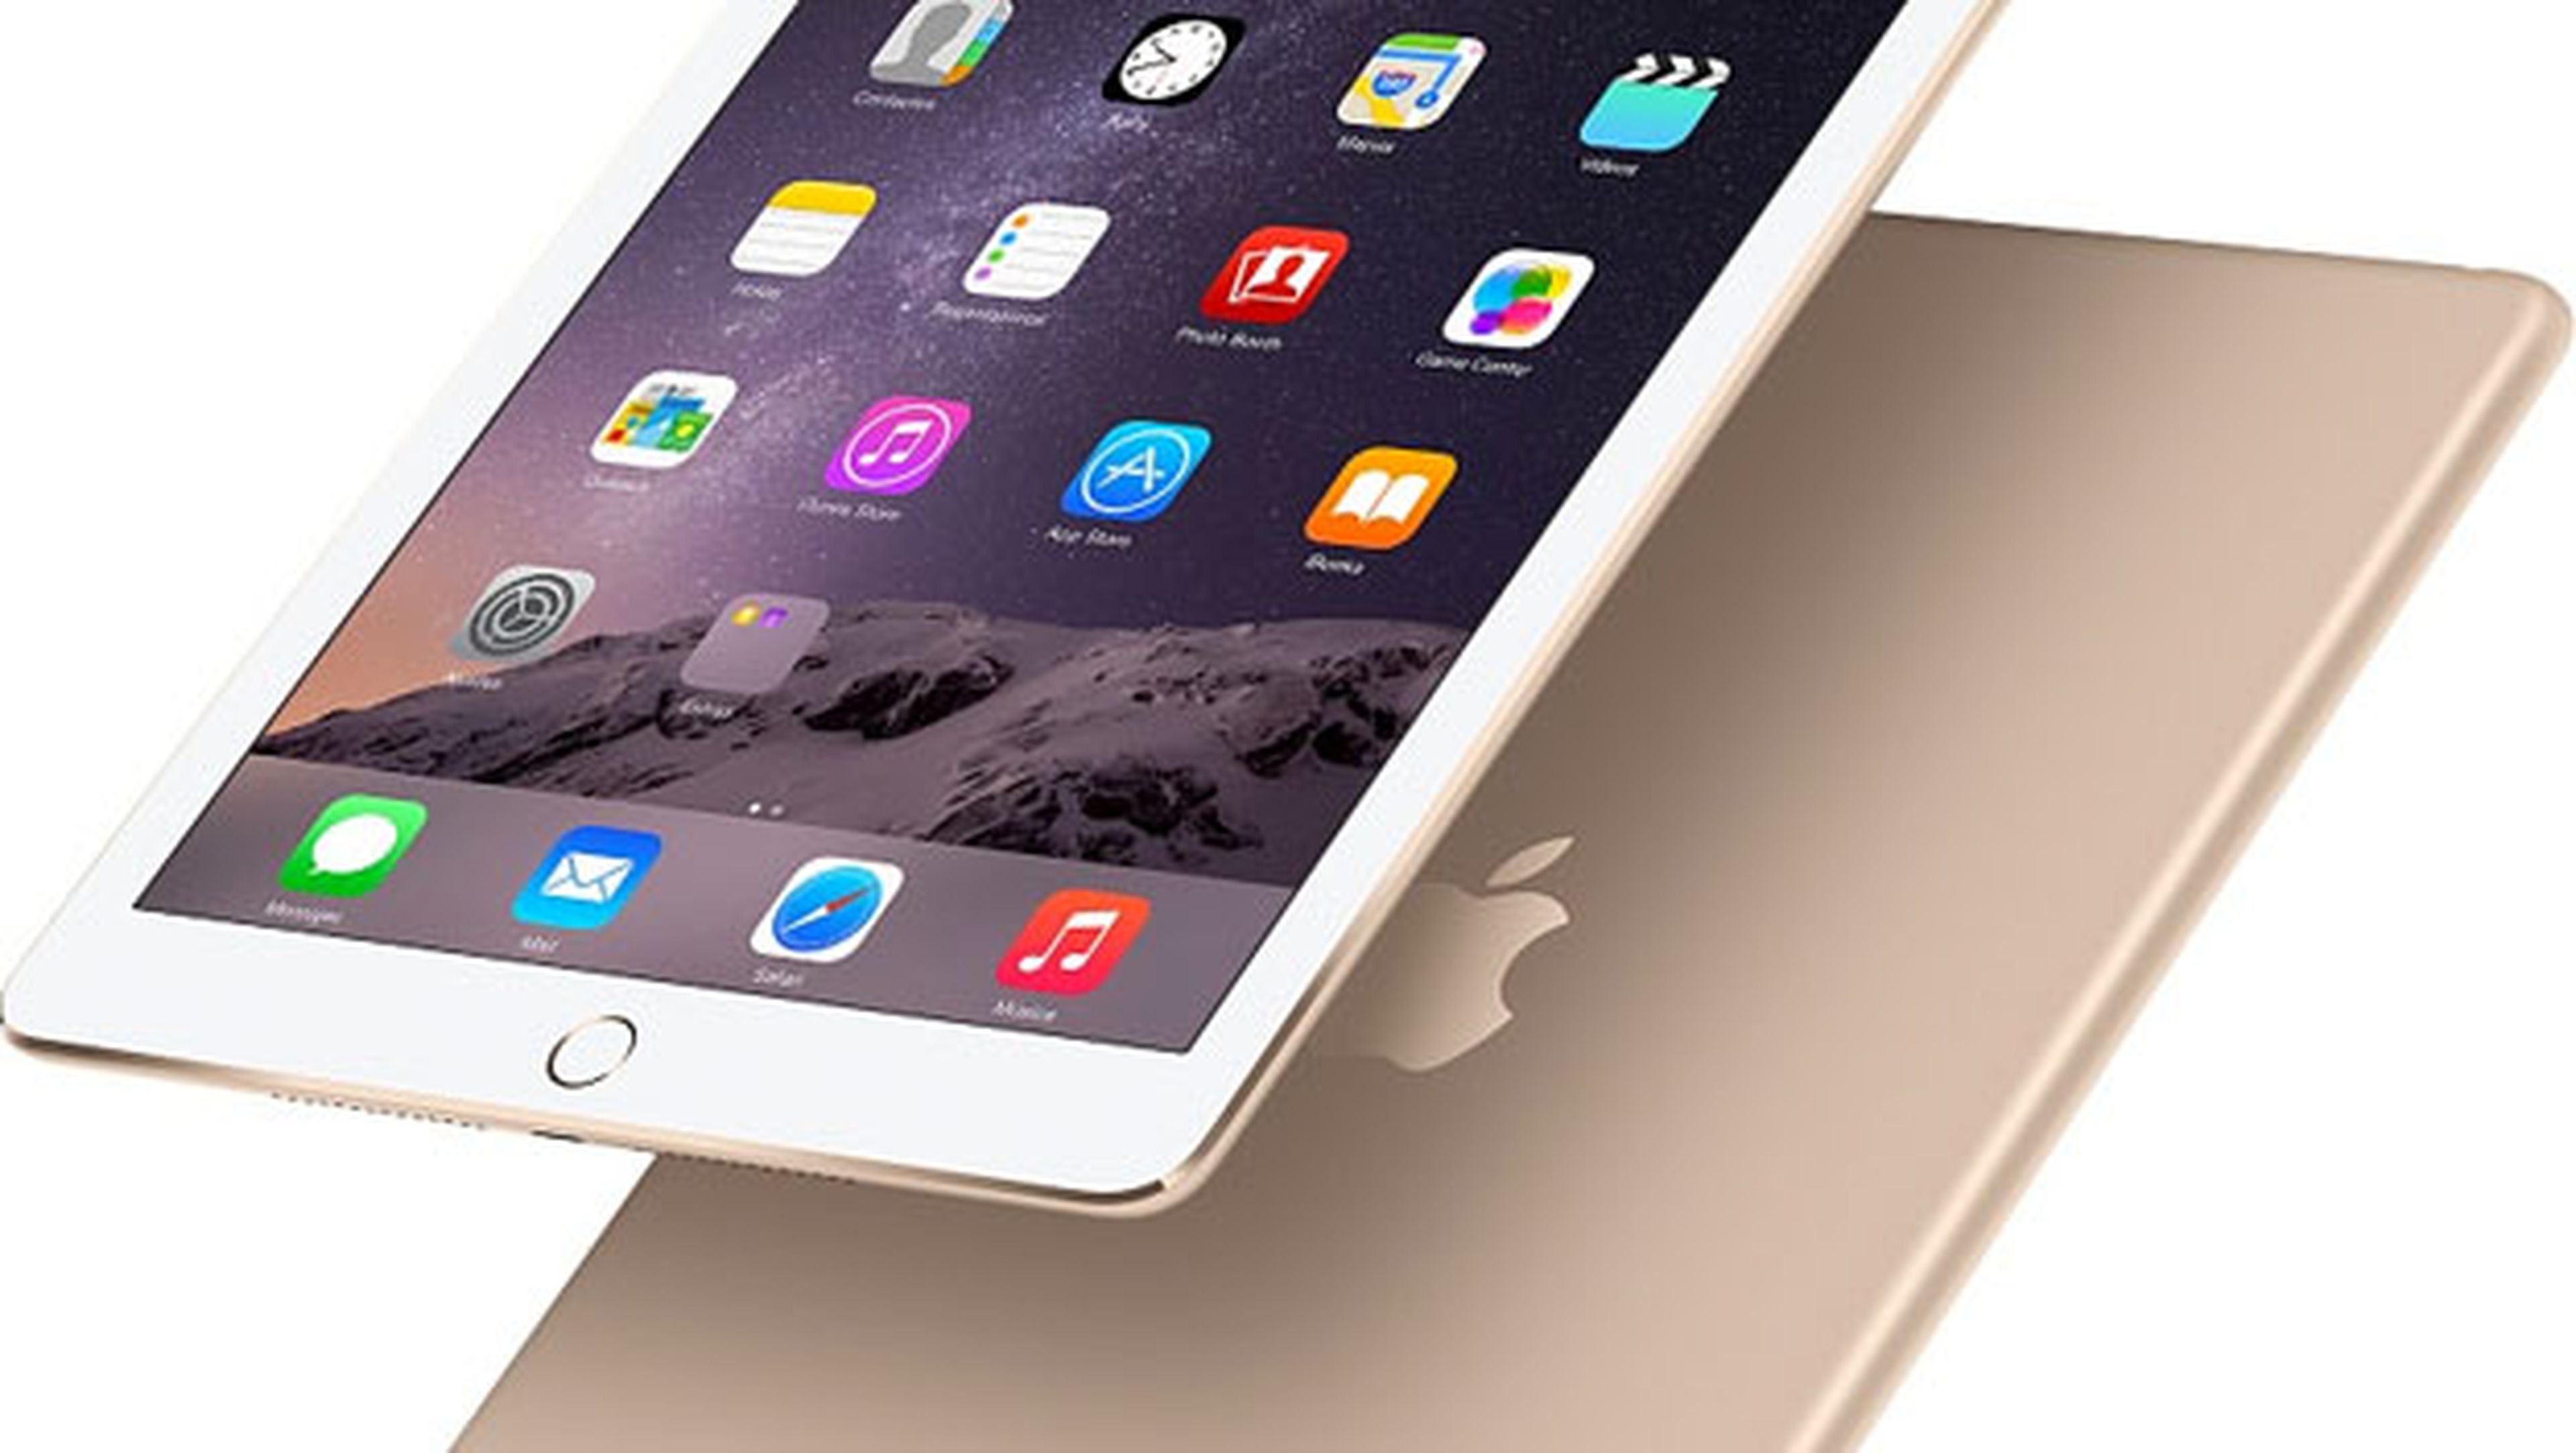 Comparativa: iPad Air 2 vs iPad Air, ¿qué mejoras ofrece?